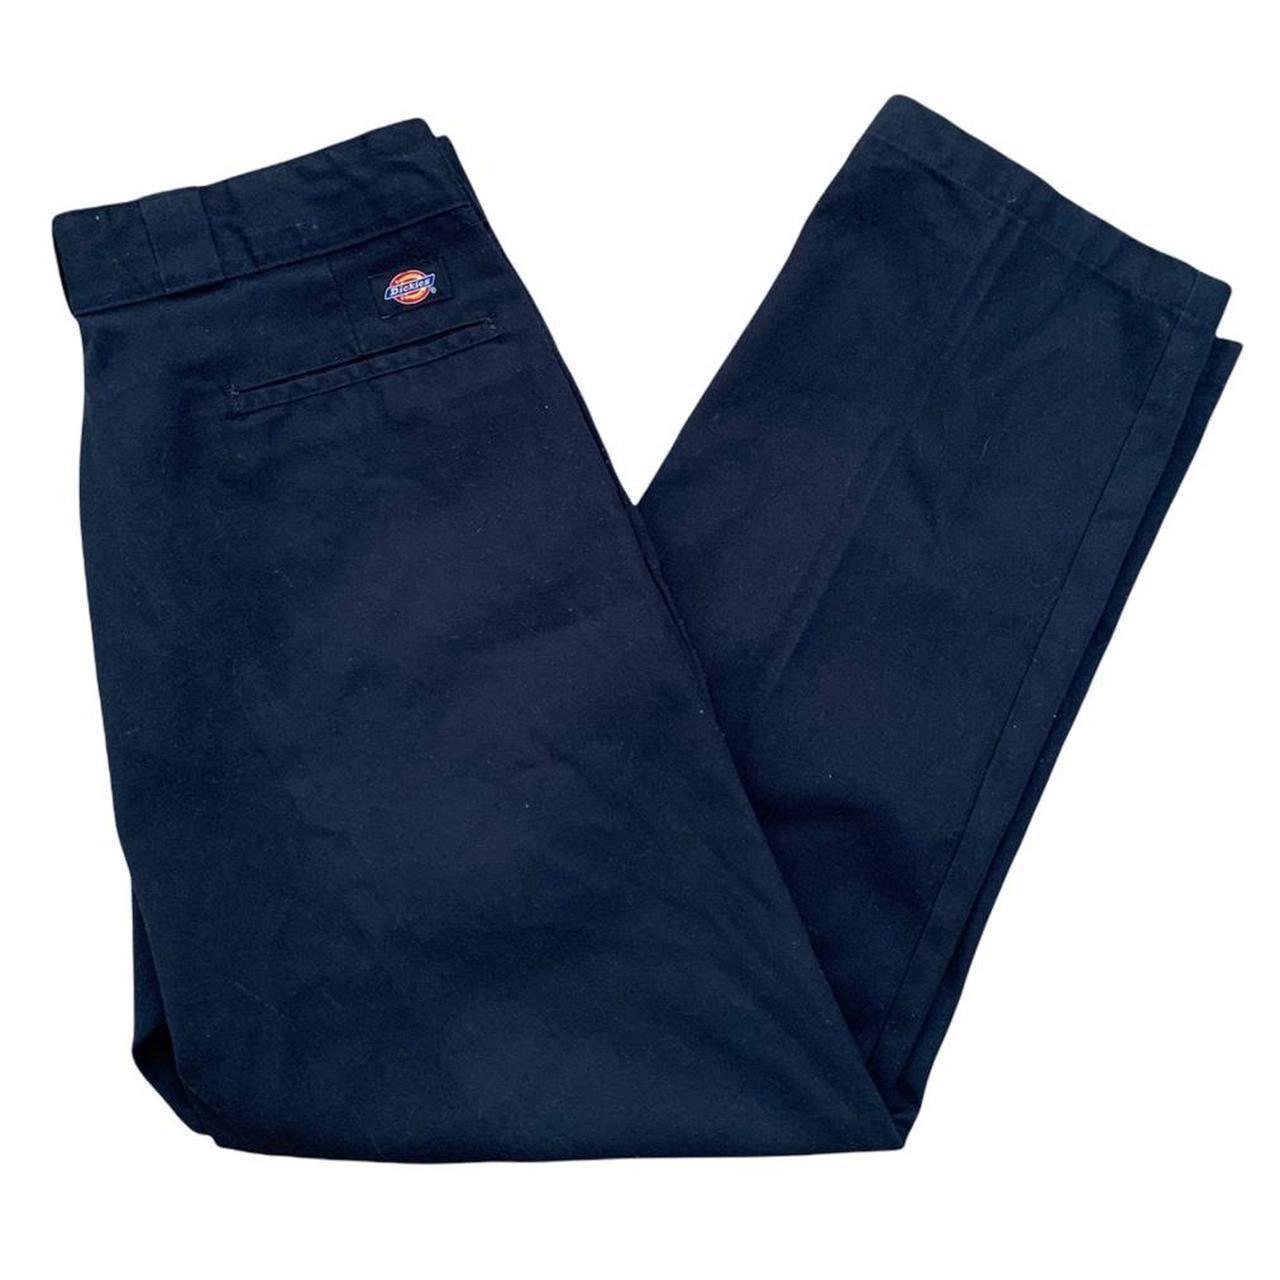 vintage dickies flex 874 slacks pants distressed old... - Depop